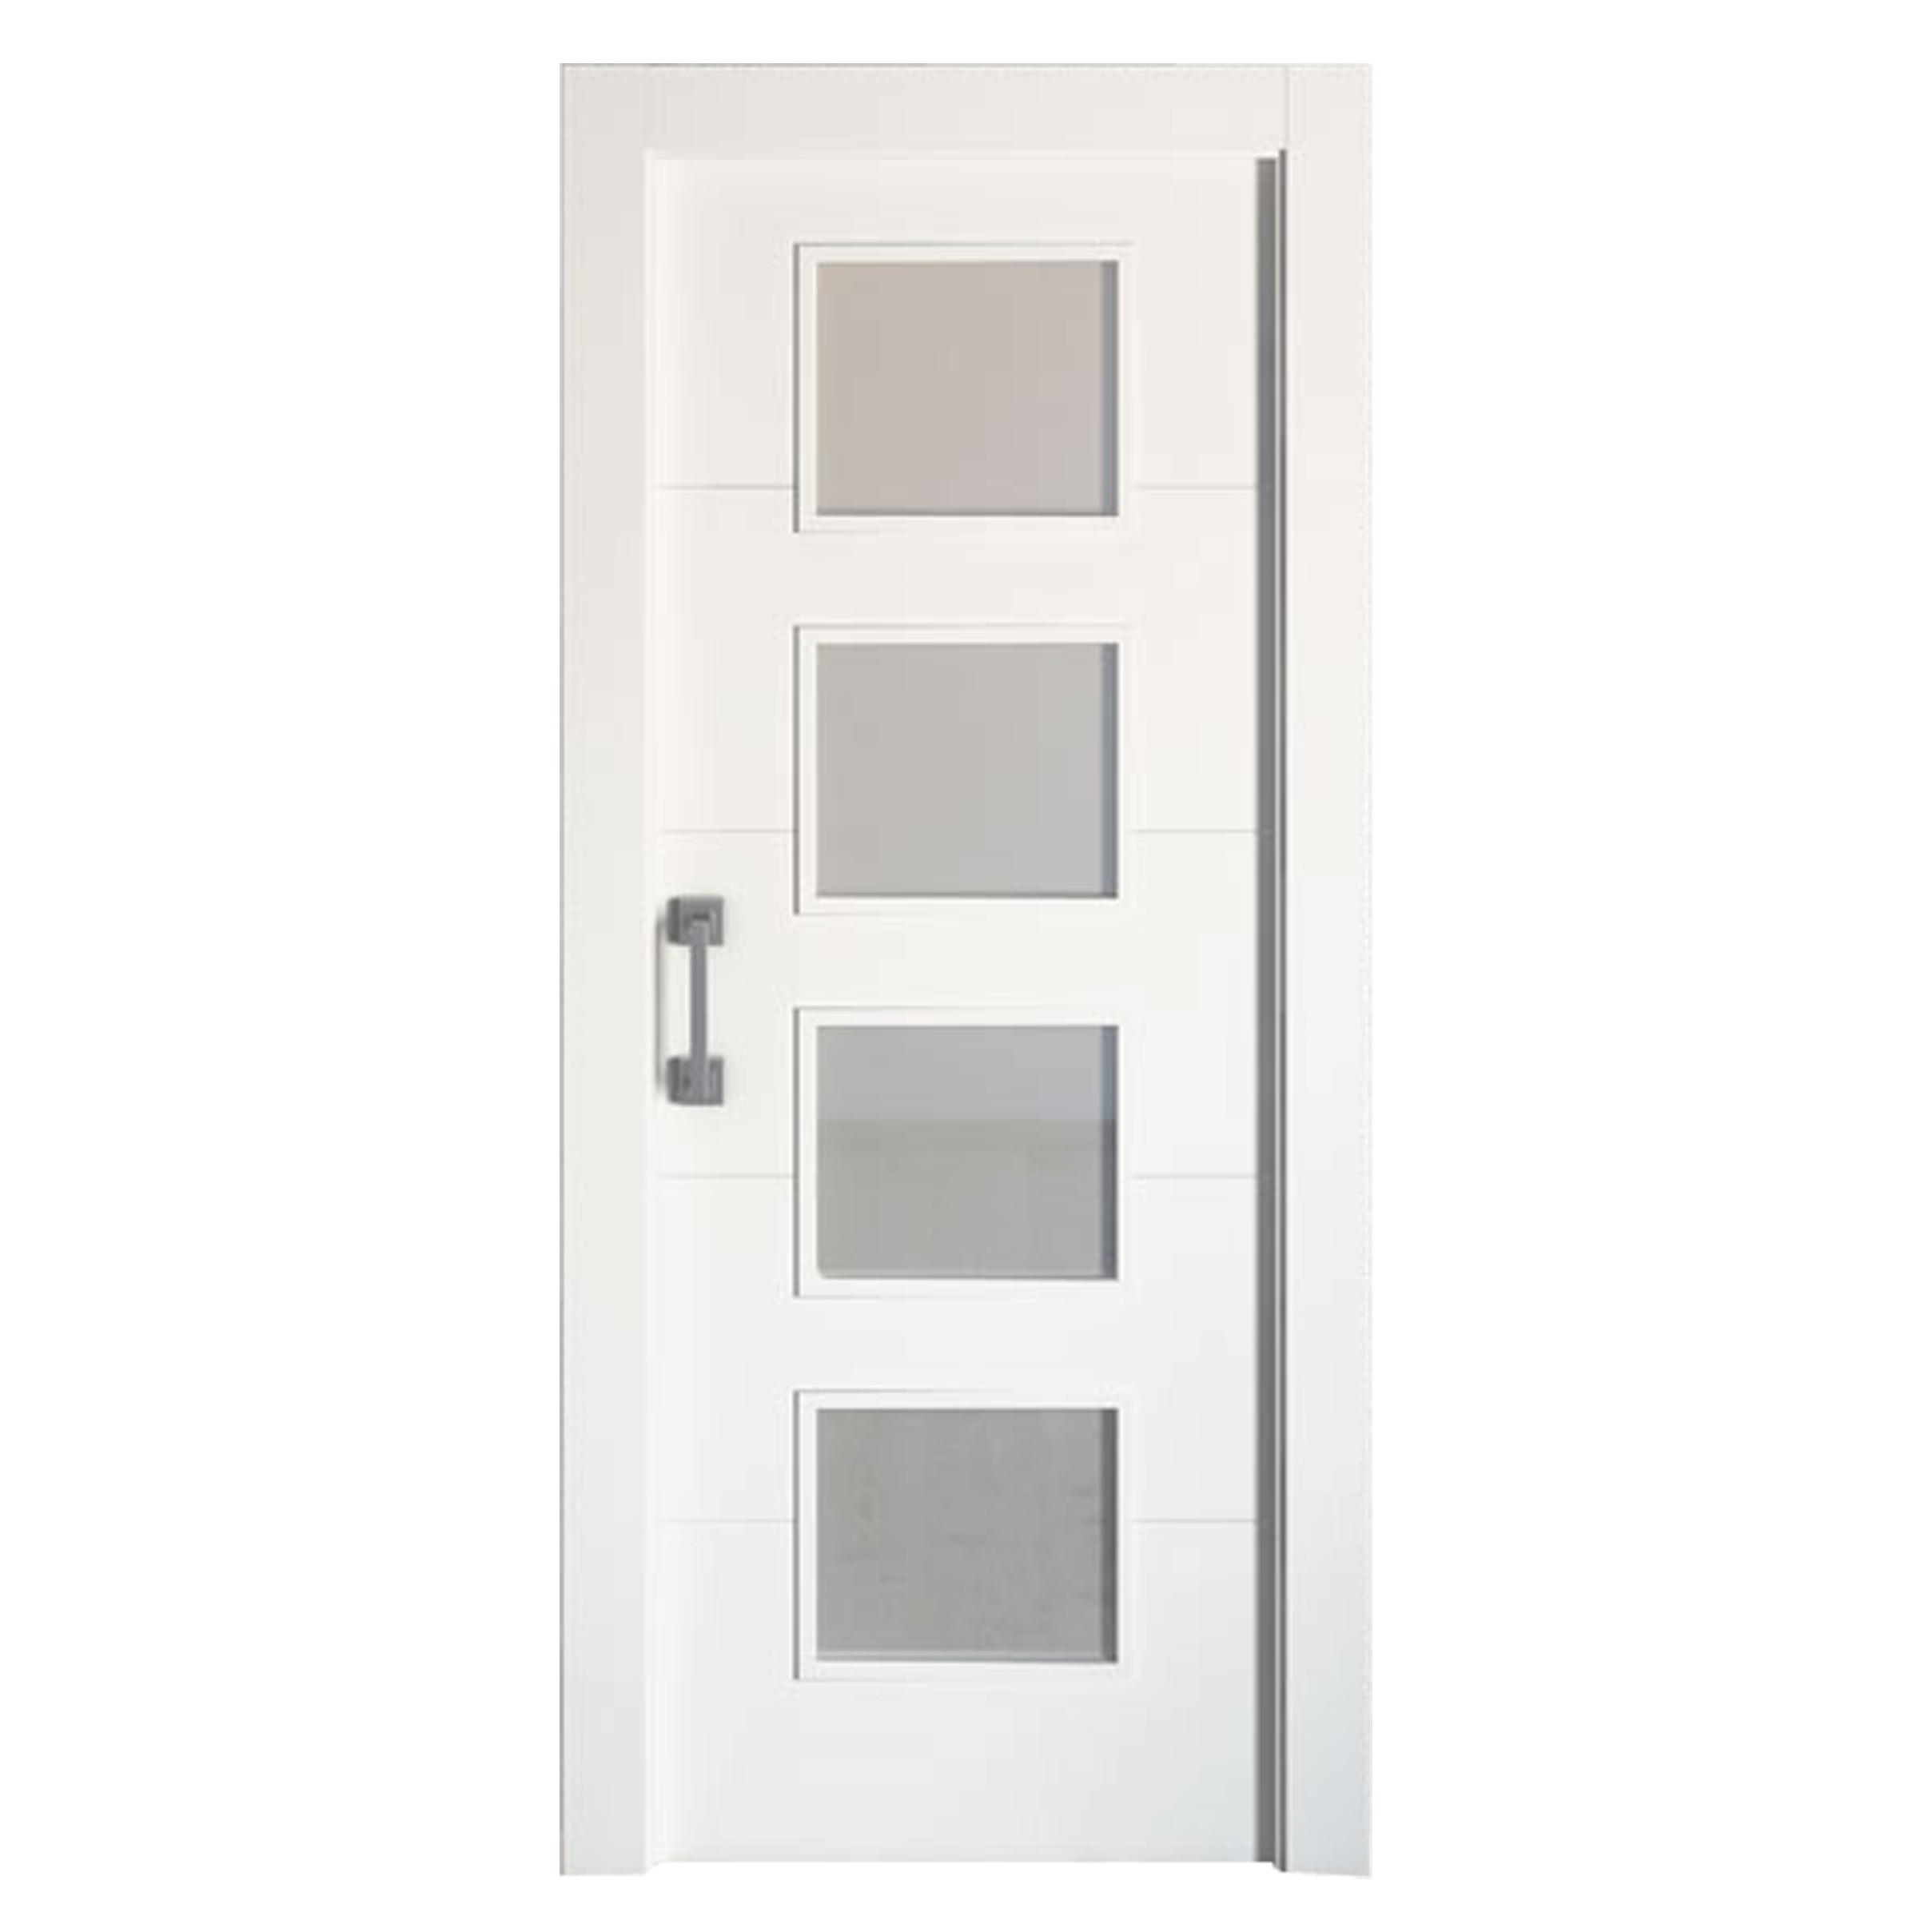 Puerta corredera lucerna blanca line plus blanco con cristal de 82.5x203cm